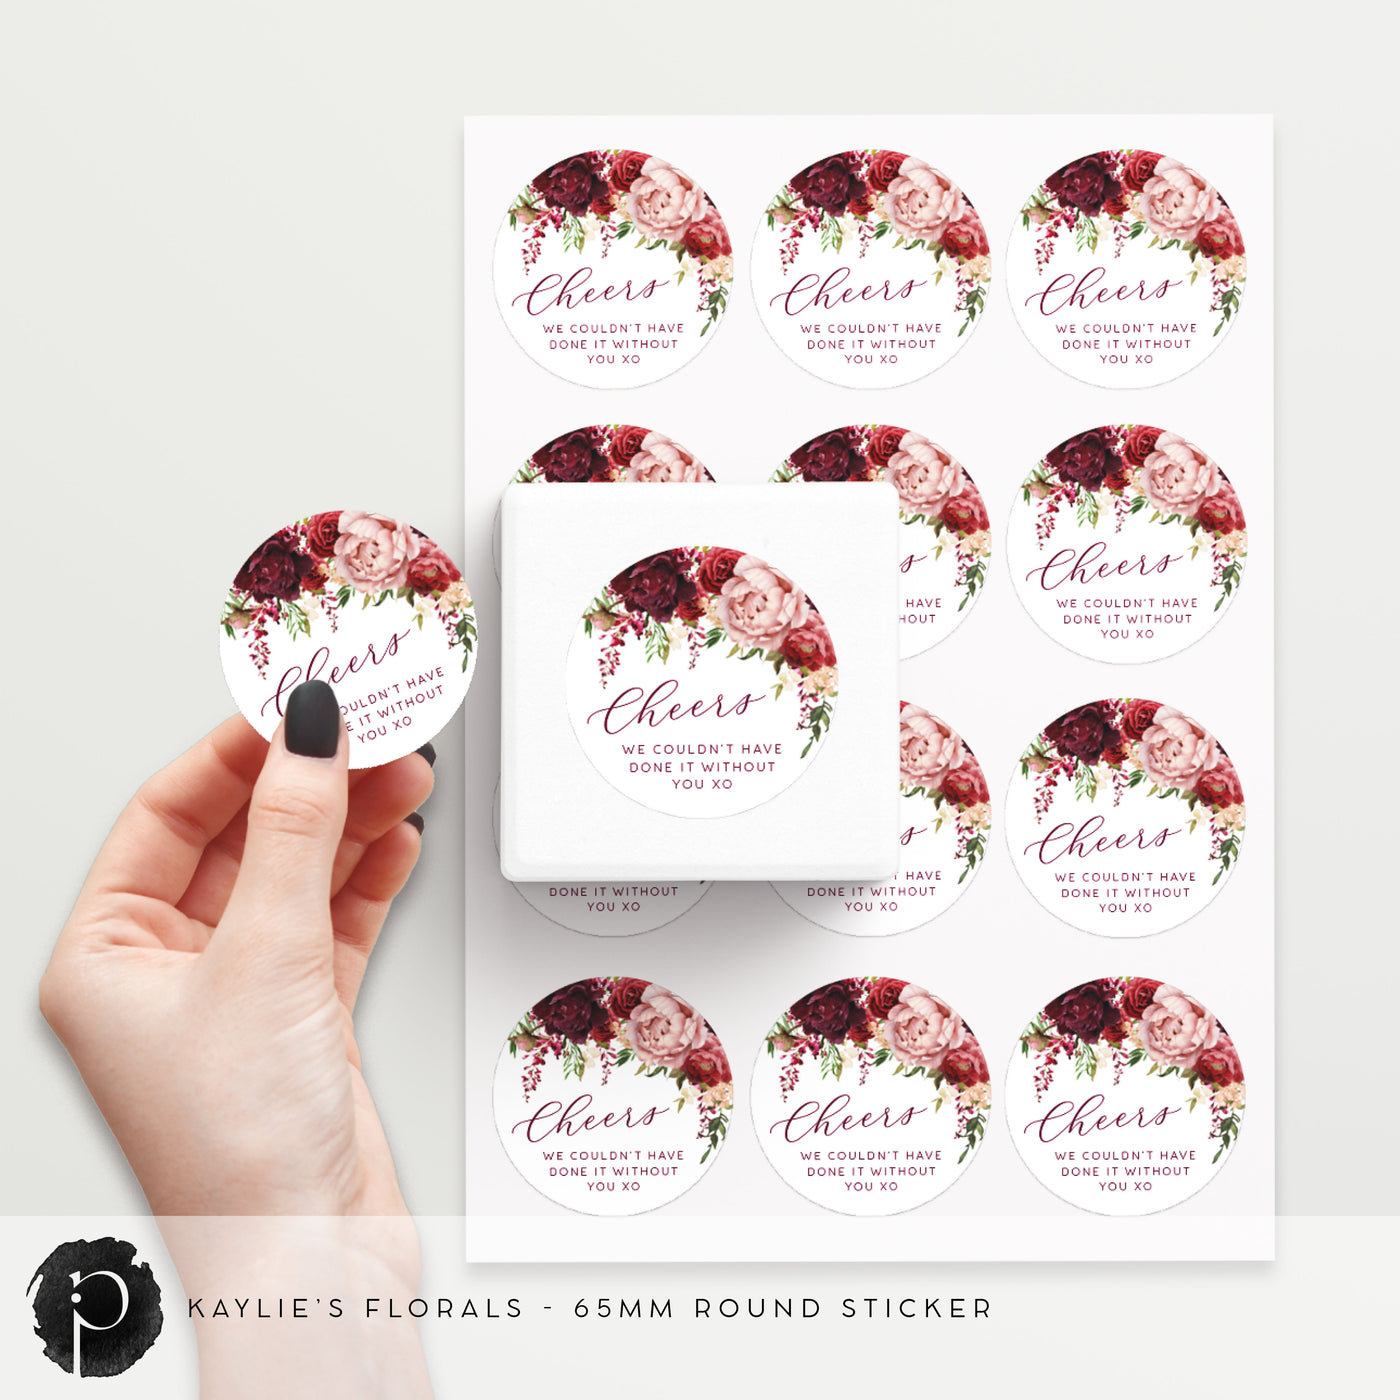 Kaylie's Florals - Stickers/Seals